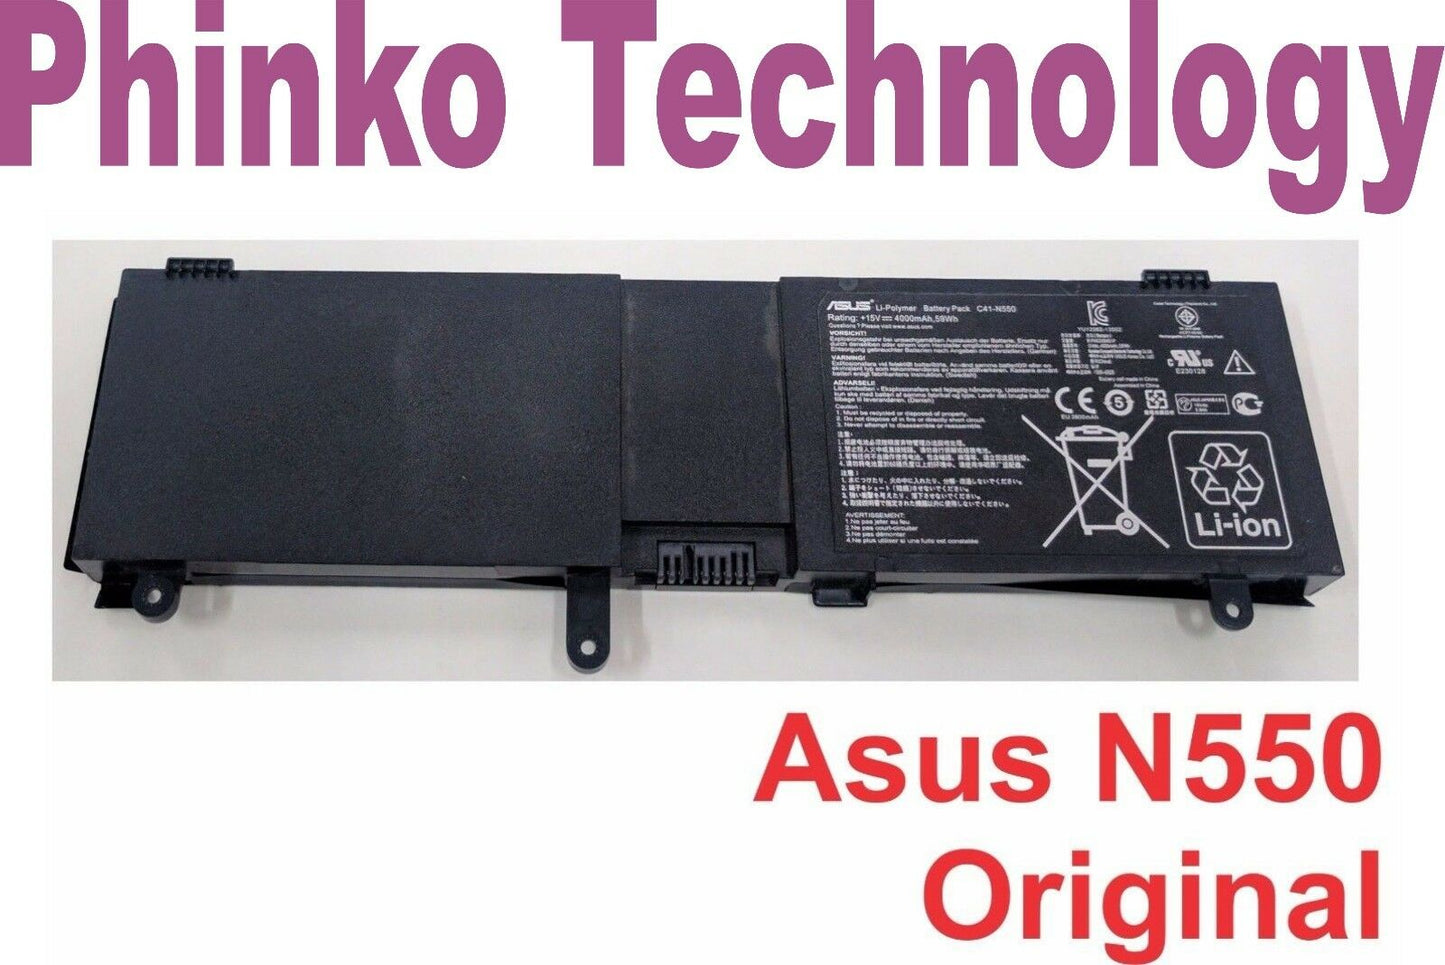 Genuine Original Battery for Asus C41-N550A N550 N550JA N550JV N550J N550JK